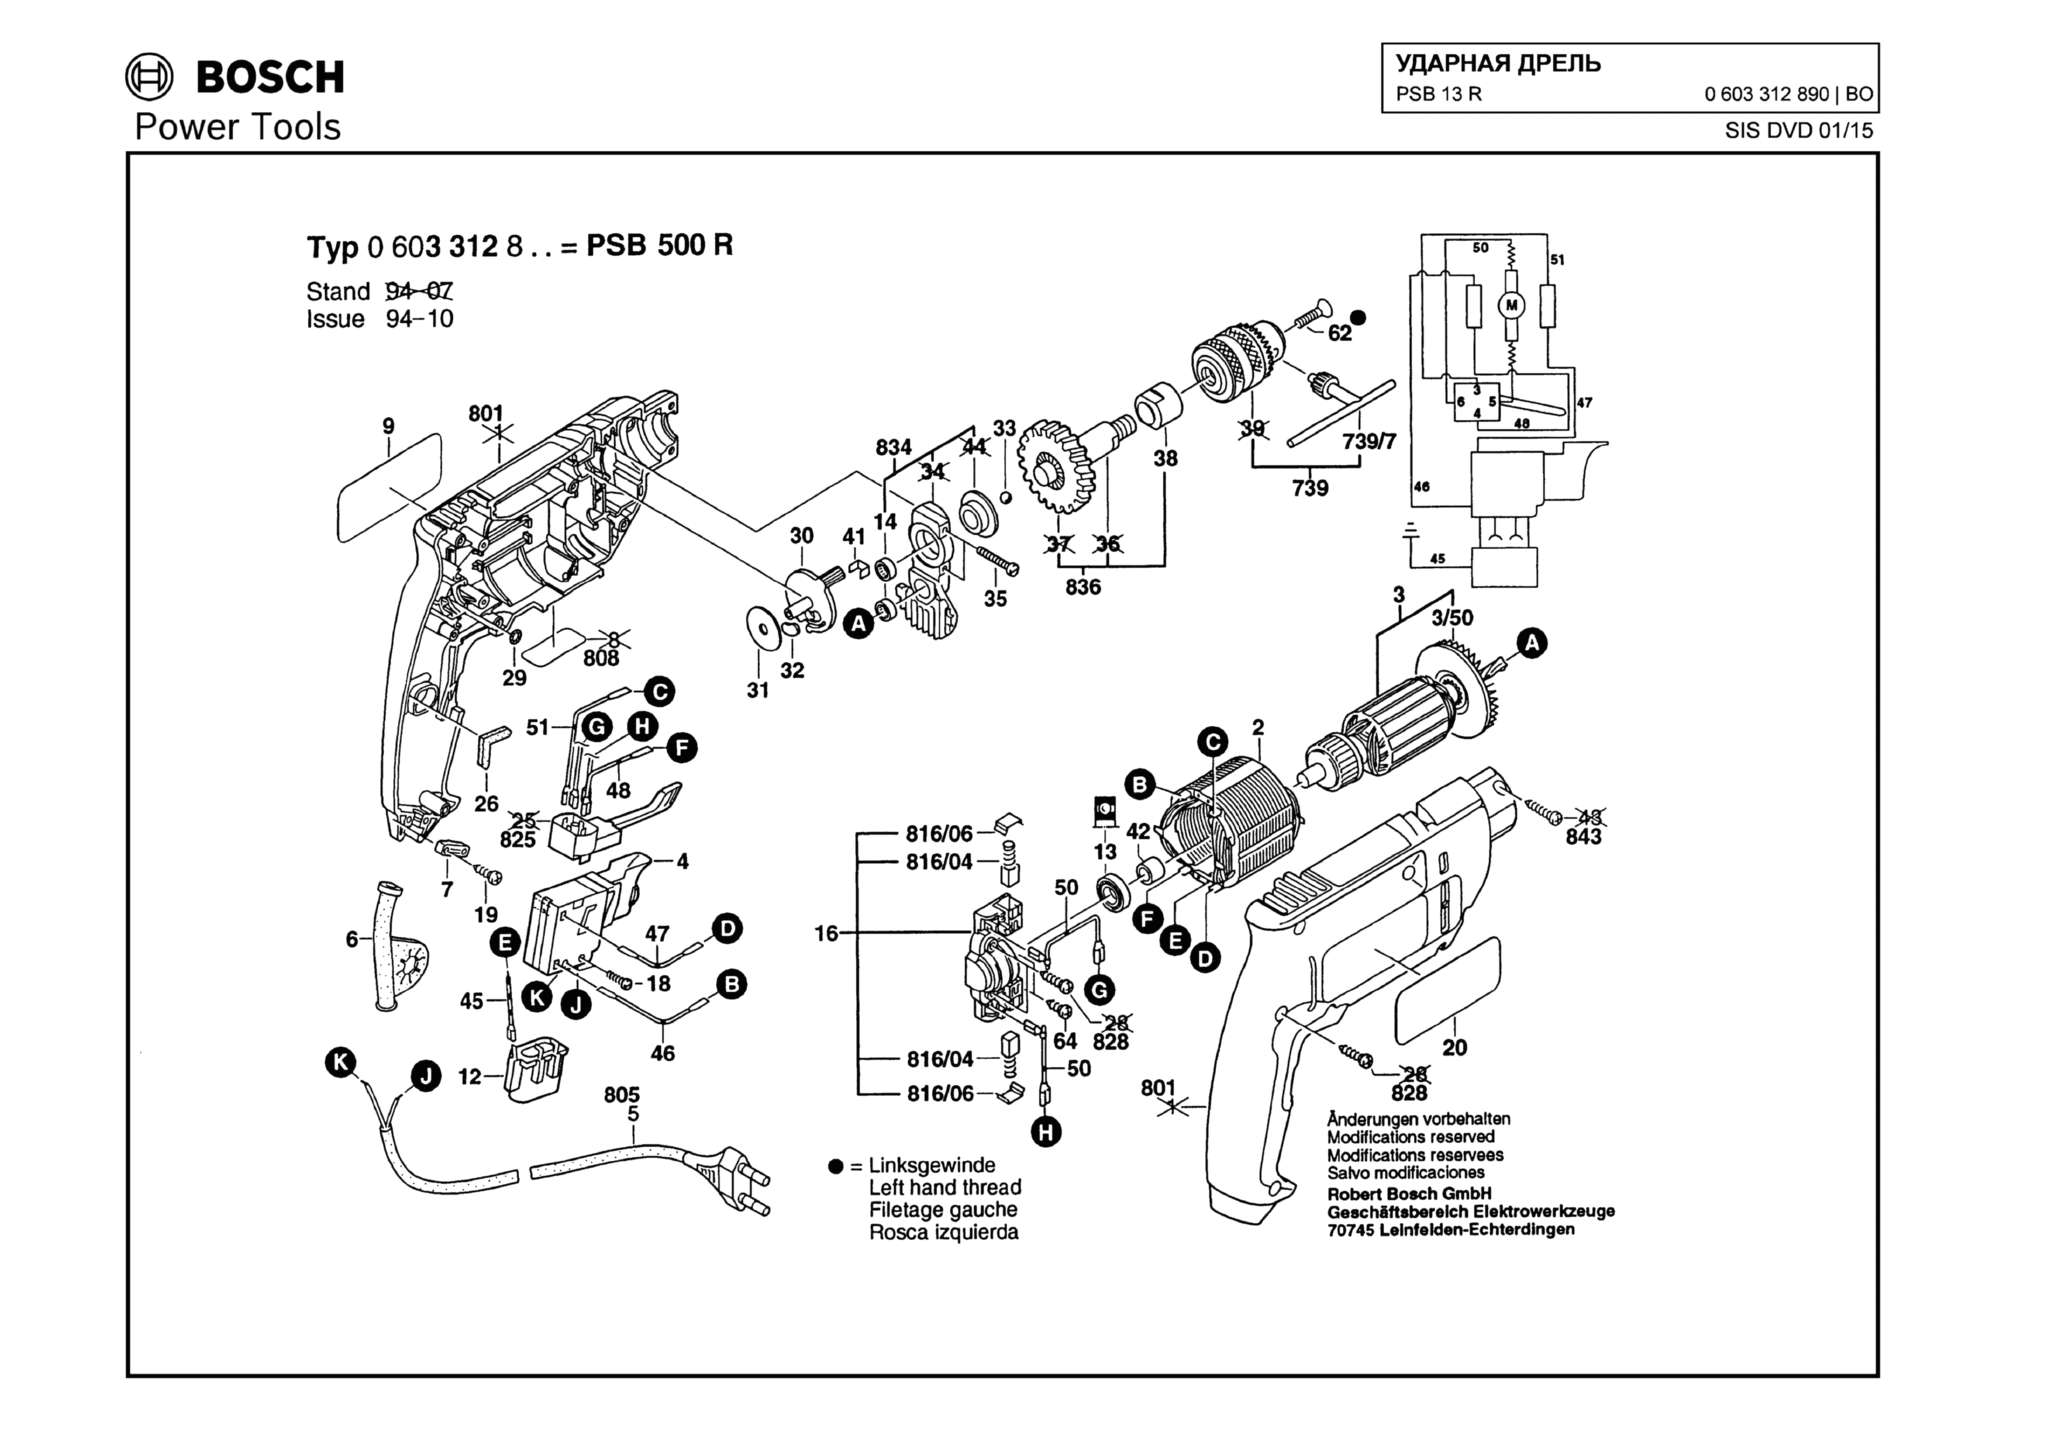 Запчасти, схема и деталировка Bosch PSB 13 R (ТИП 0603312890)